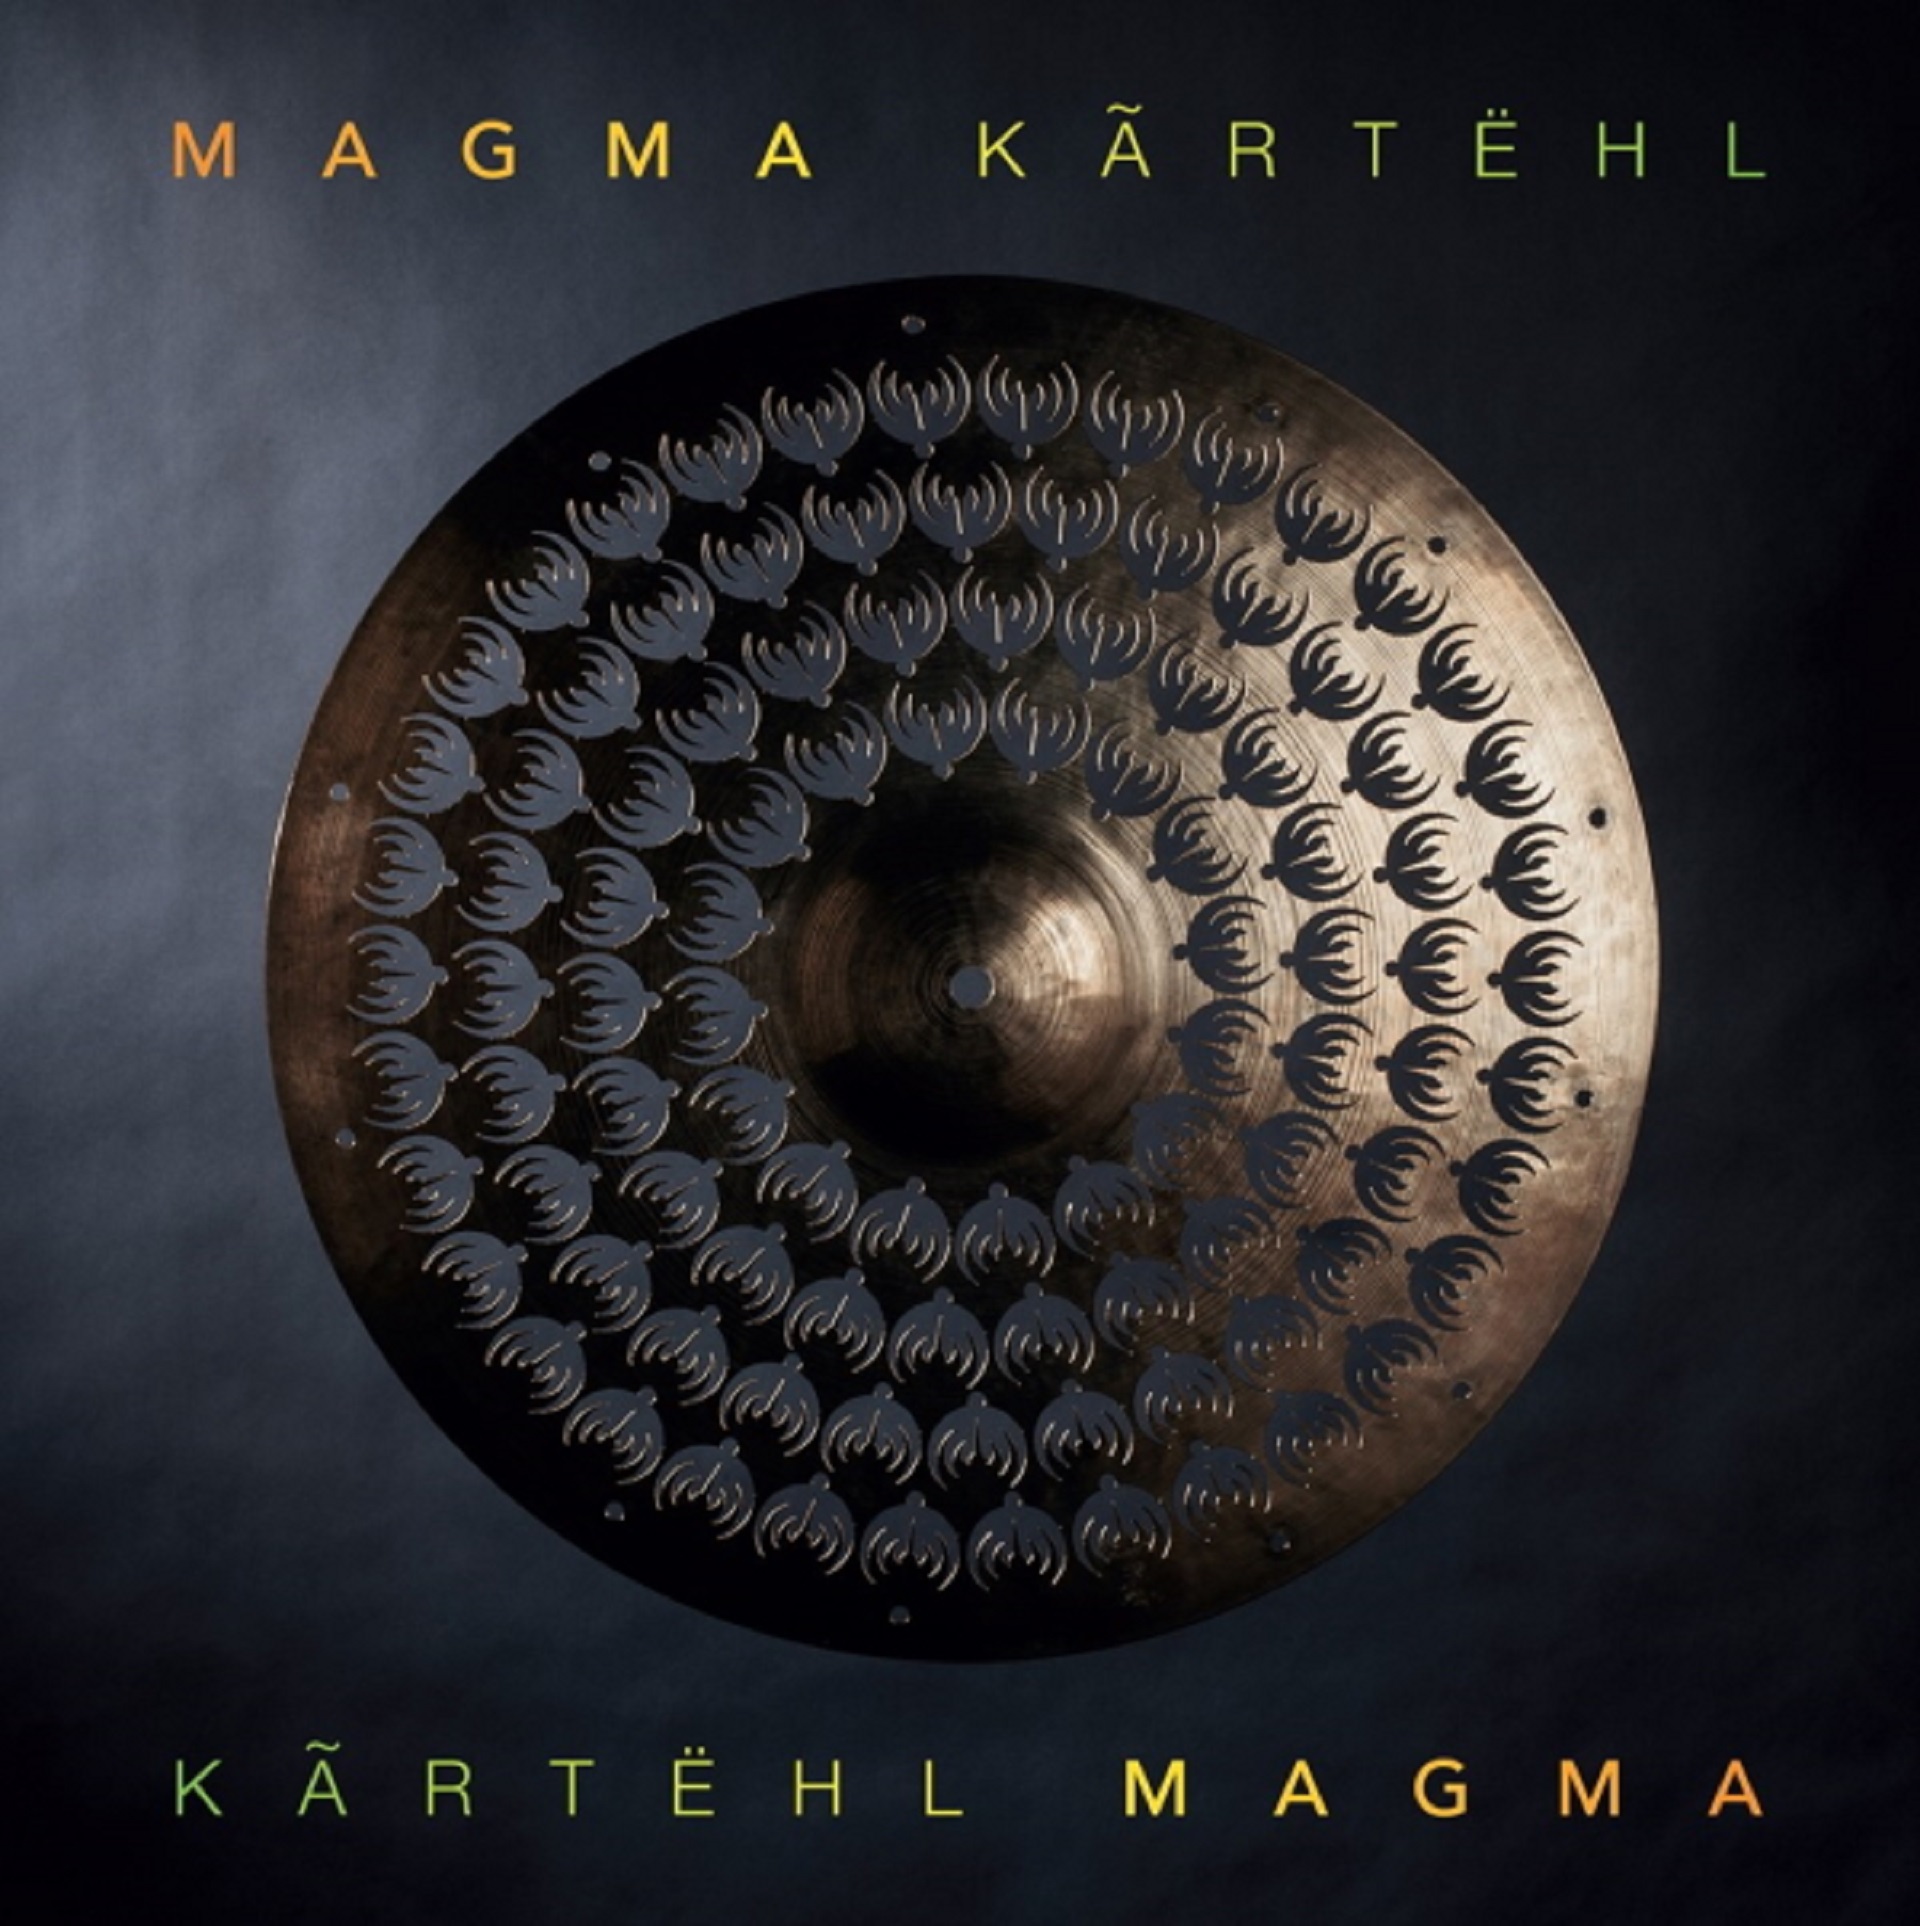 French Music Legends Magma To Release New Studio Album “Kartëhl” on September 30, 2022